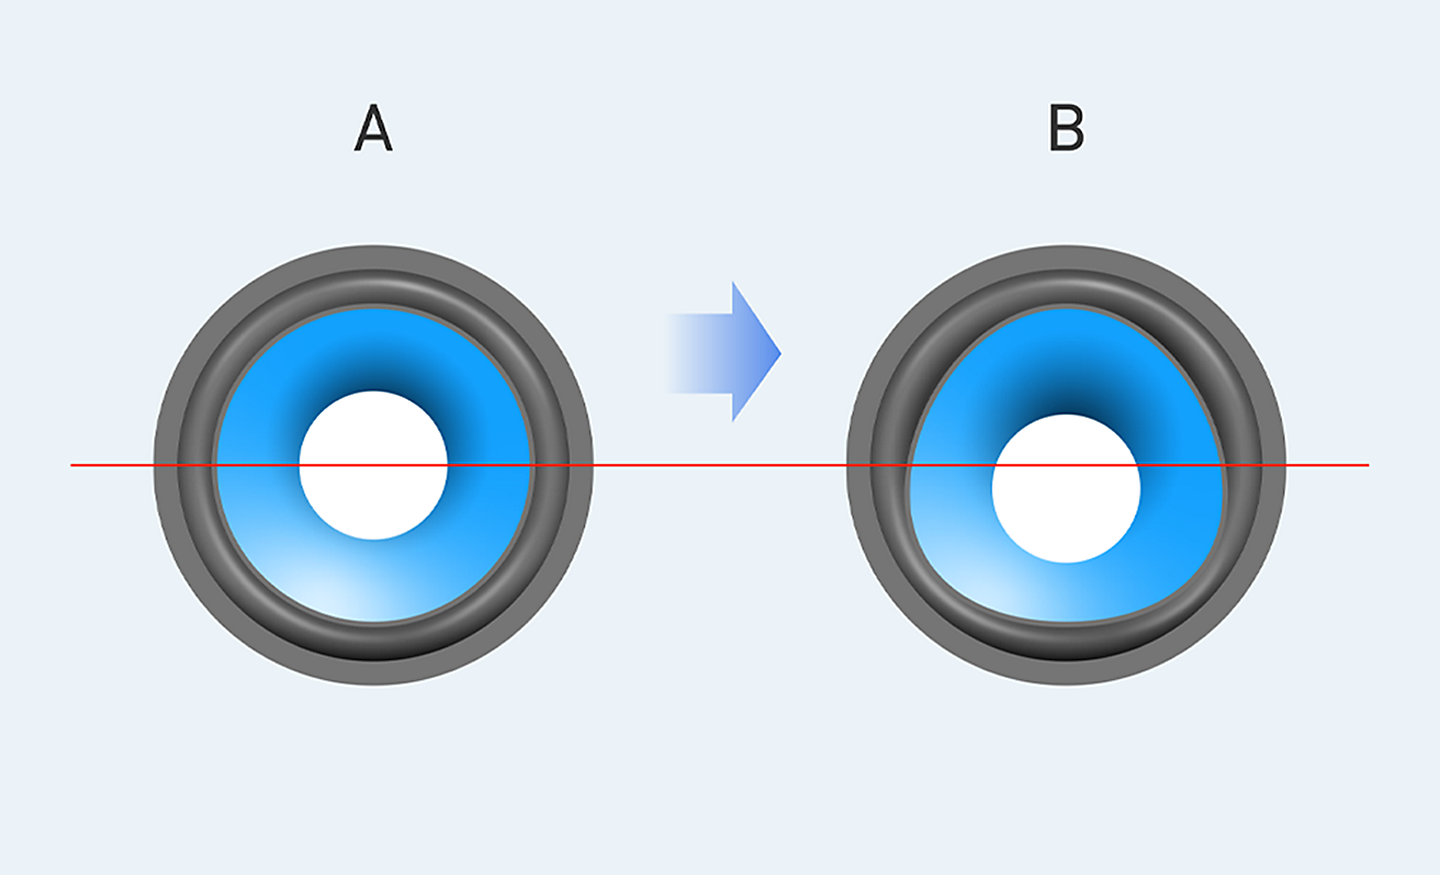 Imagen en que se compara el diafragma descentrado con uno normal. El diseño descentrado tiene forma ovalada y su centro está más bajo